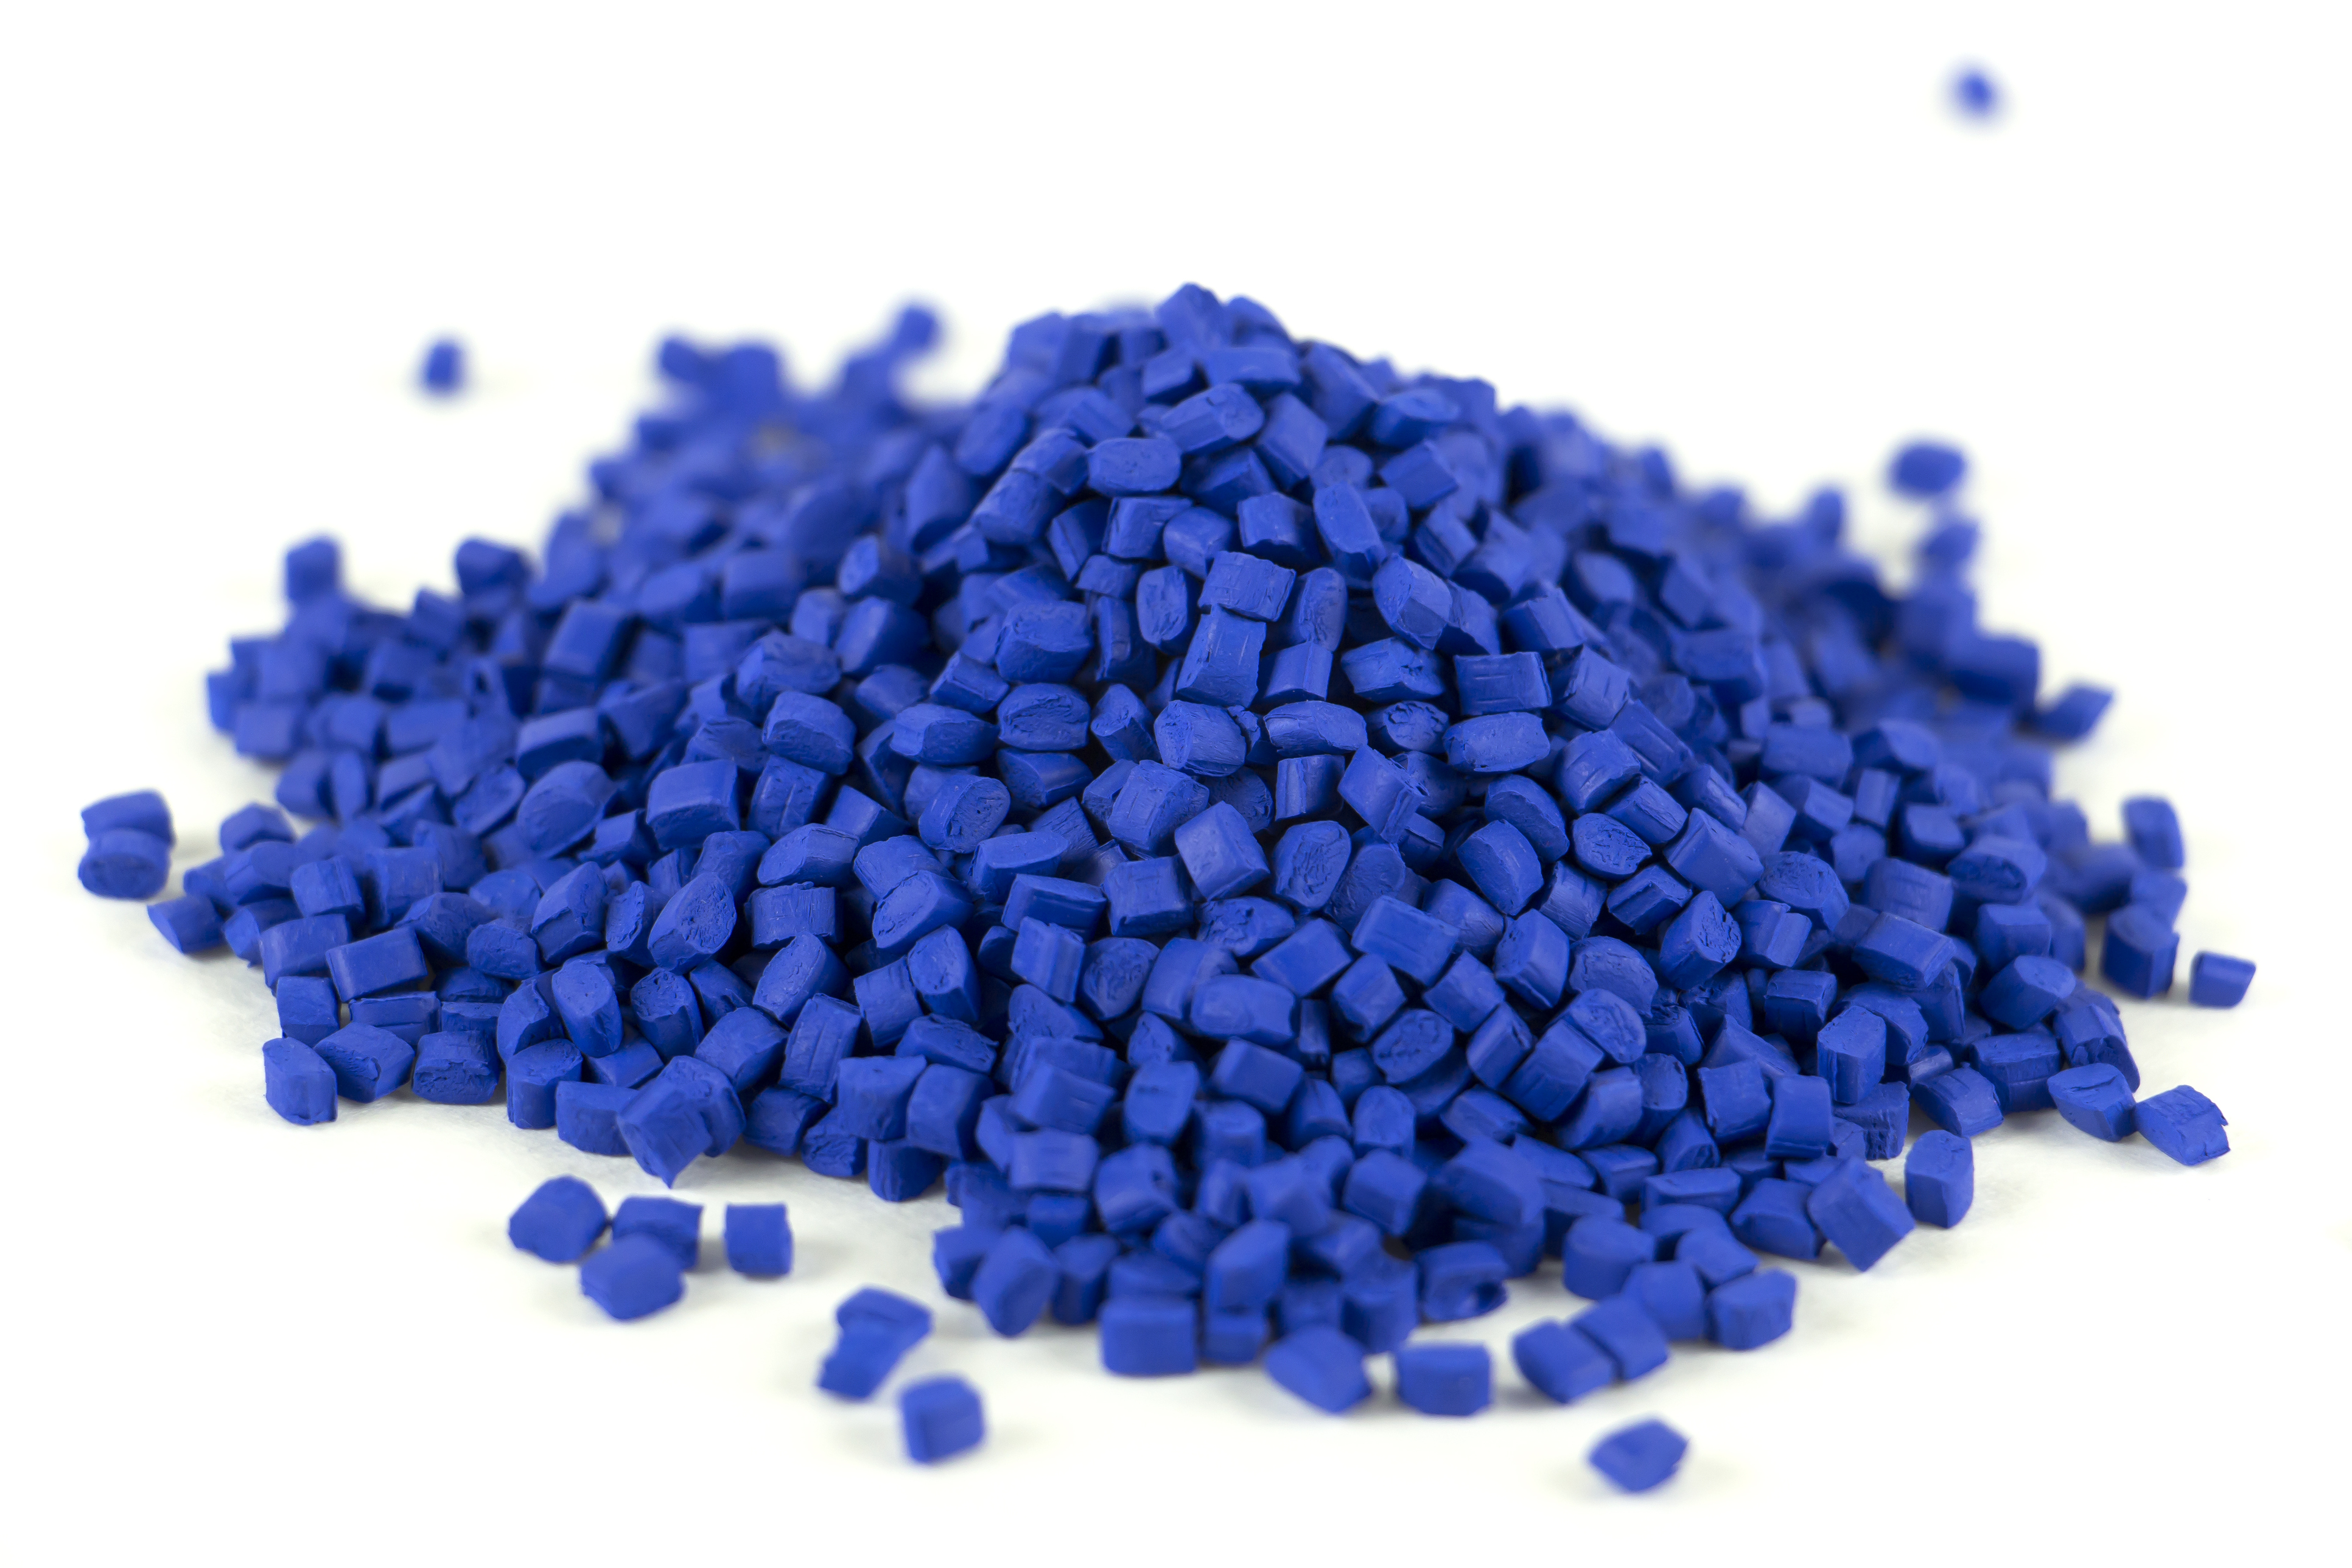 Blue resin pellets